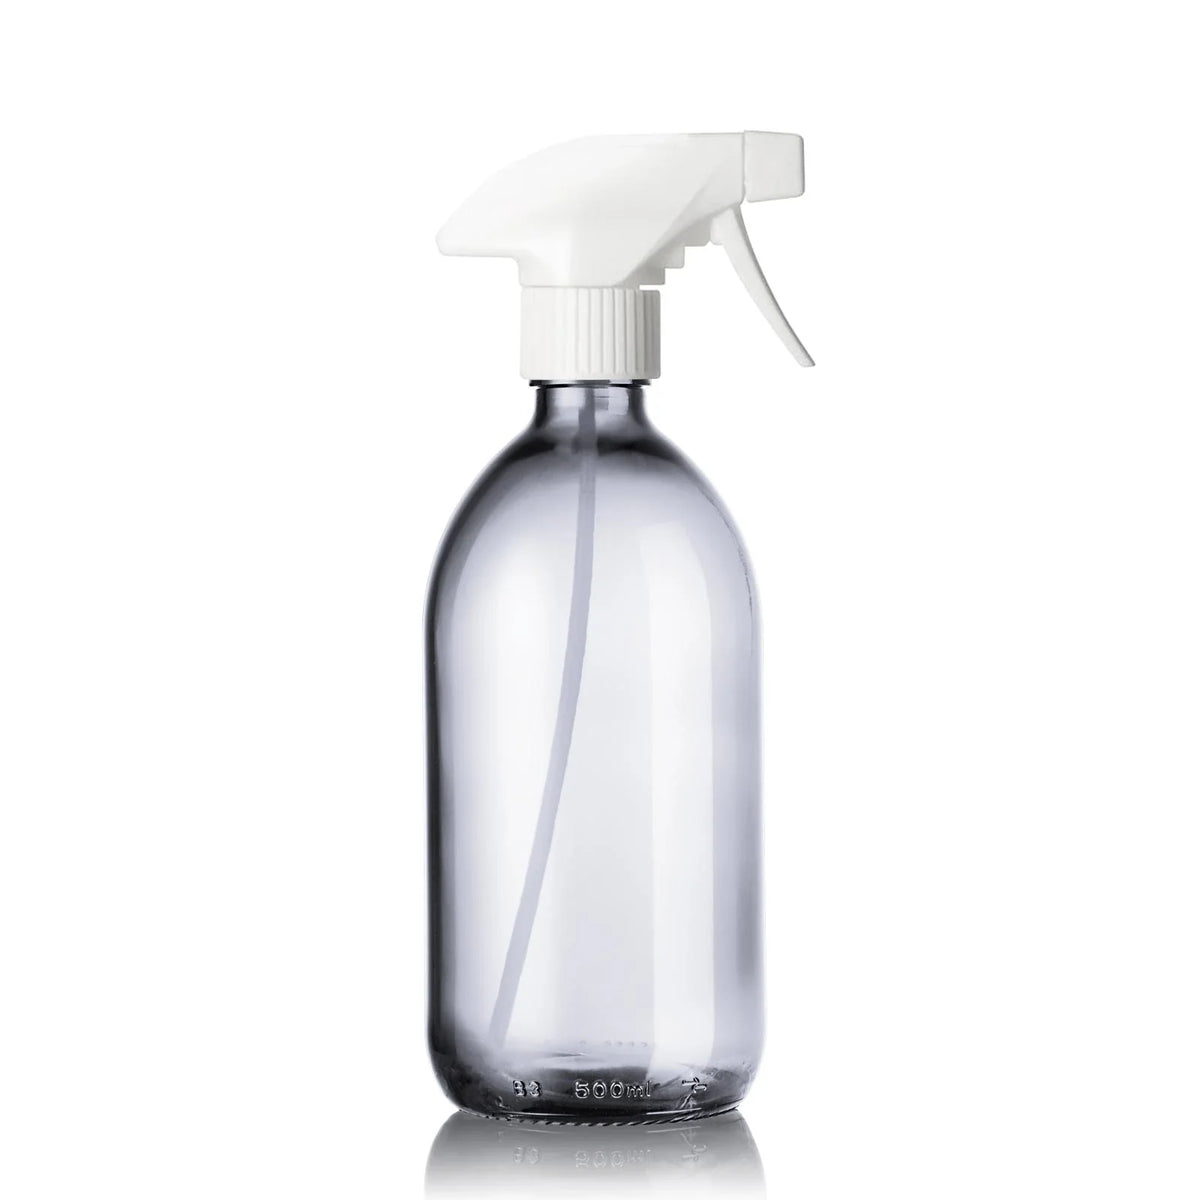 Flacon vaporisateur spray en verre transparent 500 ml - Ô Bocal - Boutique  sans emballage jetable bio vrac zéro déchet